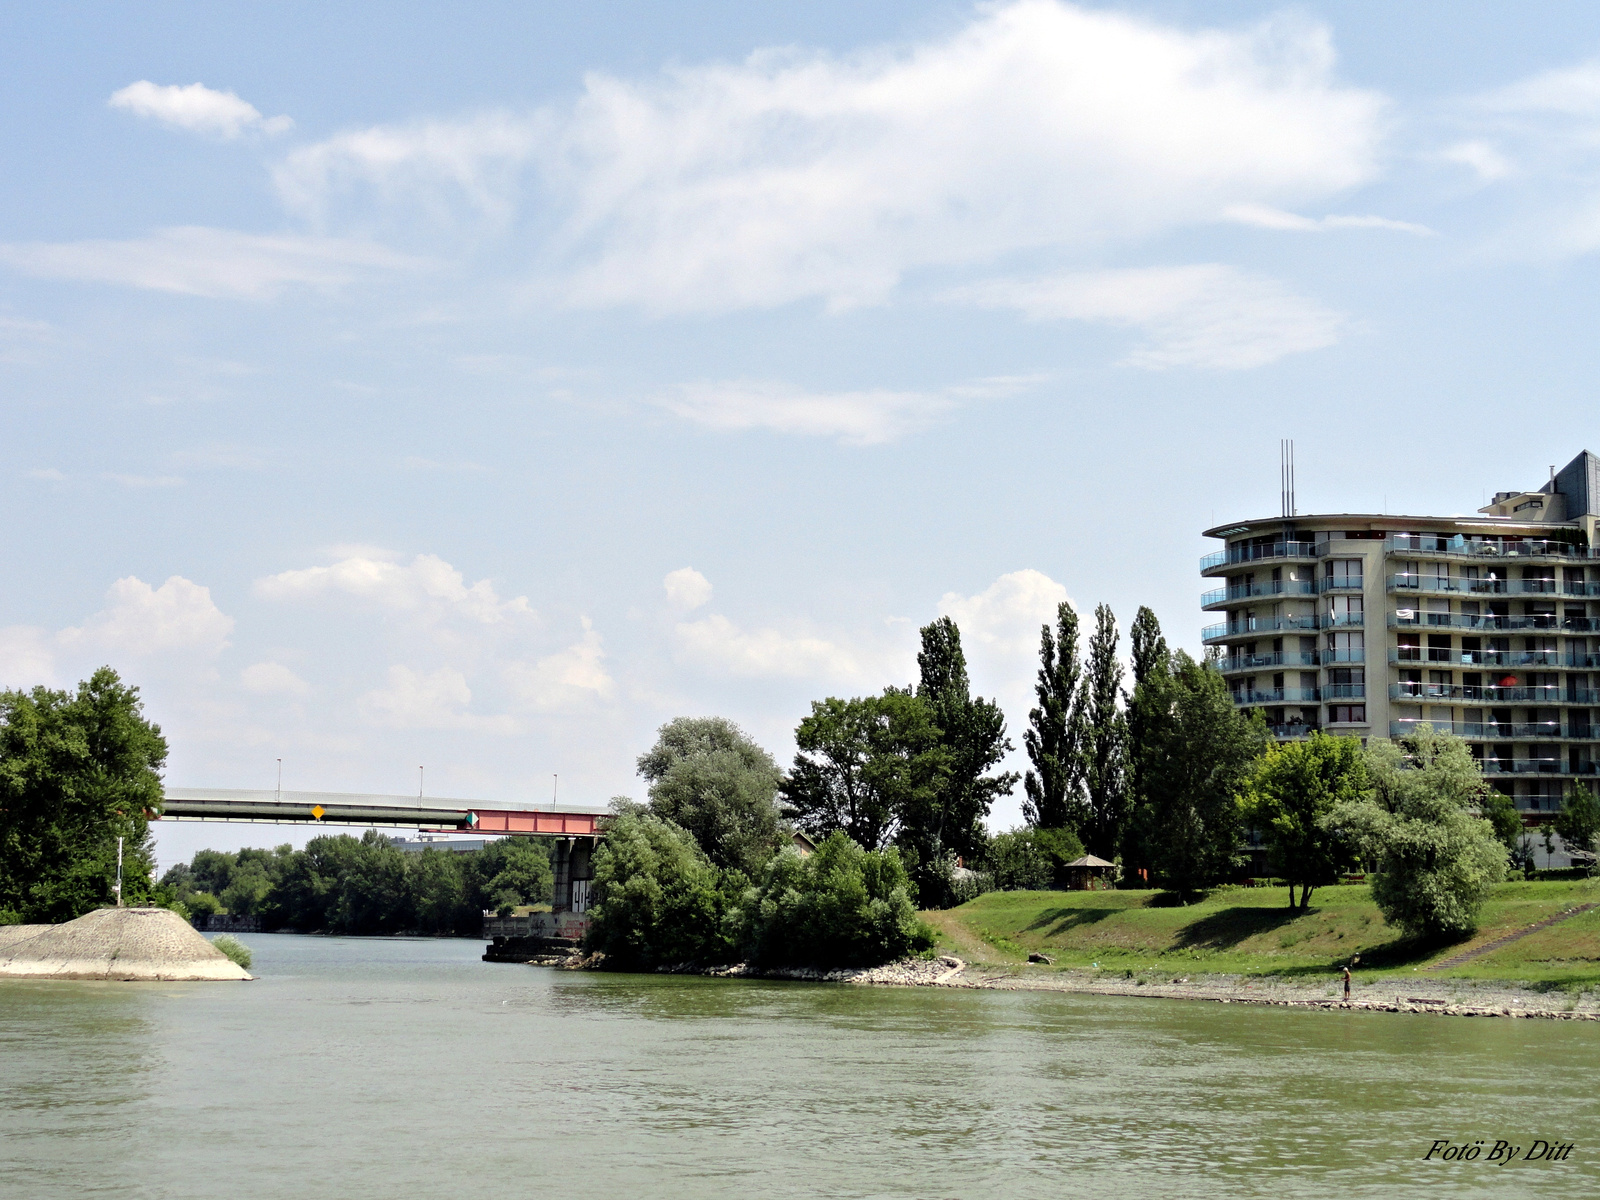 Kikötő negyed-Dunaplaza